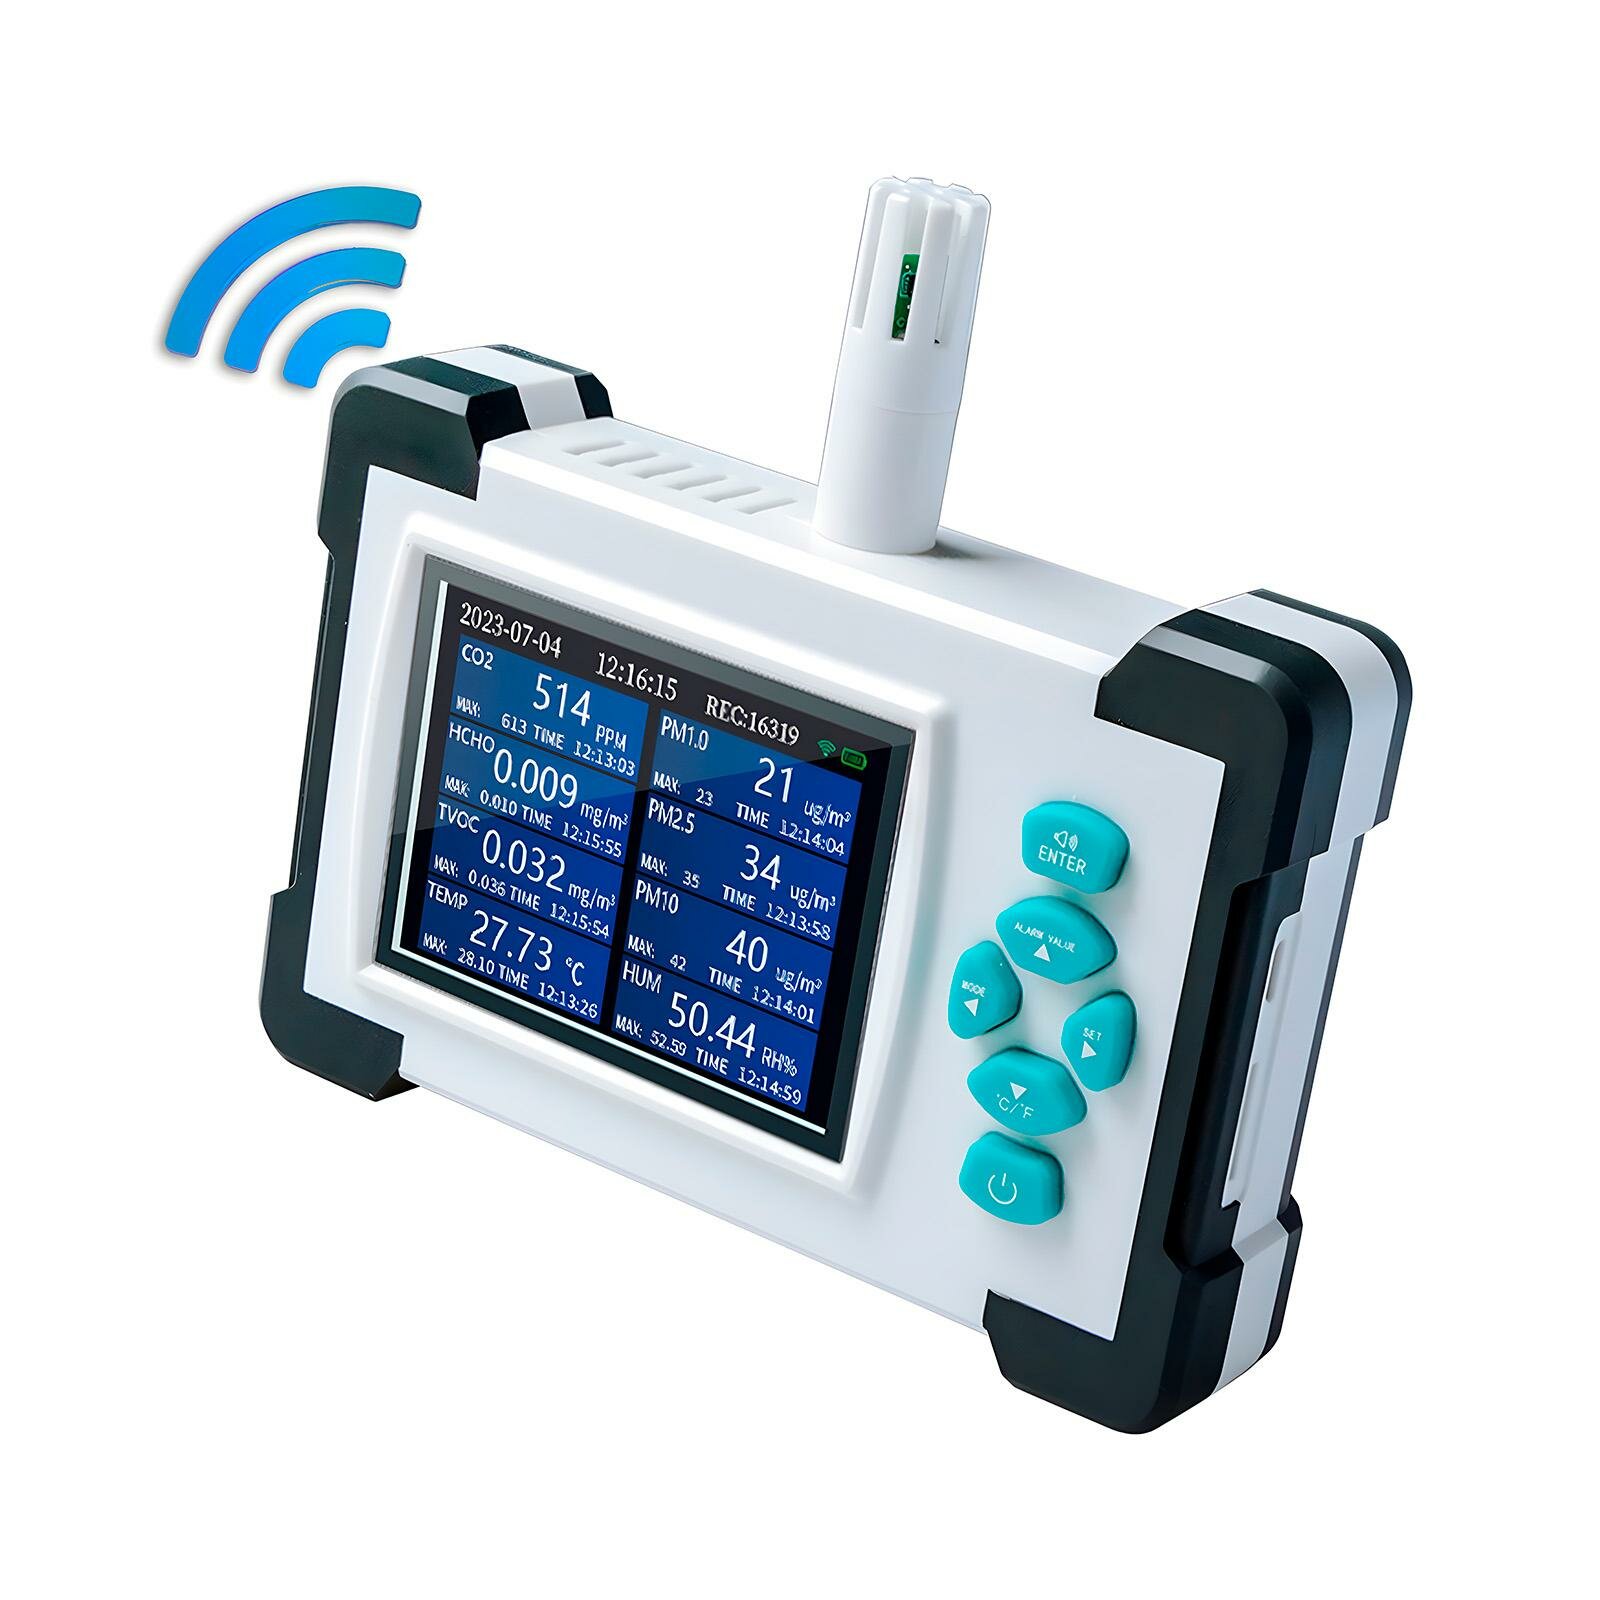 Профессиональный автономный Wi-Fi датчик-монитор качества воздуха HTI Мод: HZ700-PRO (WiFi) (N51189PR) 8 в 1. Восемь параметров качества окружающего